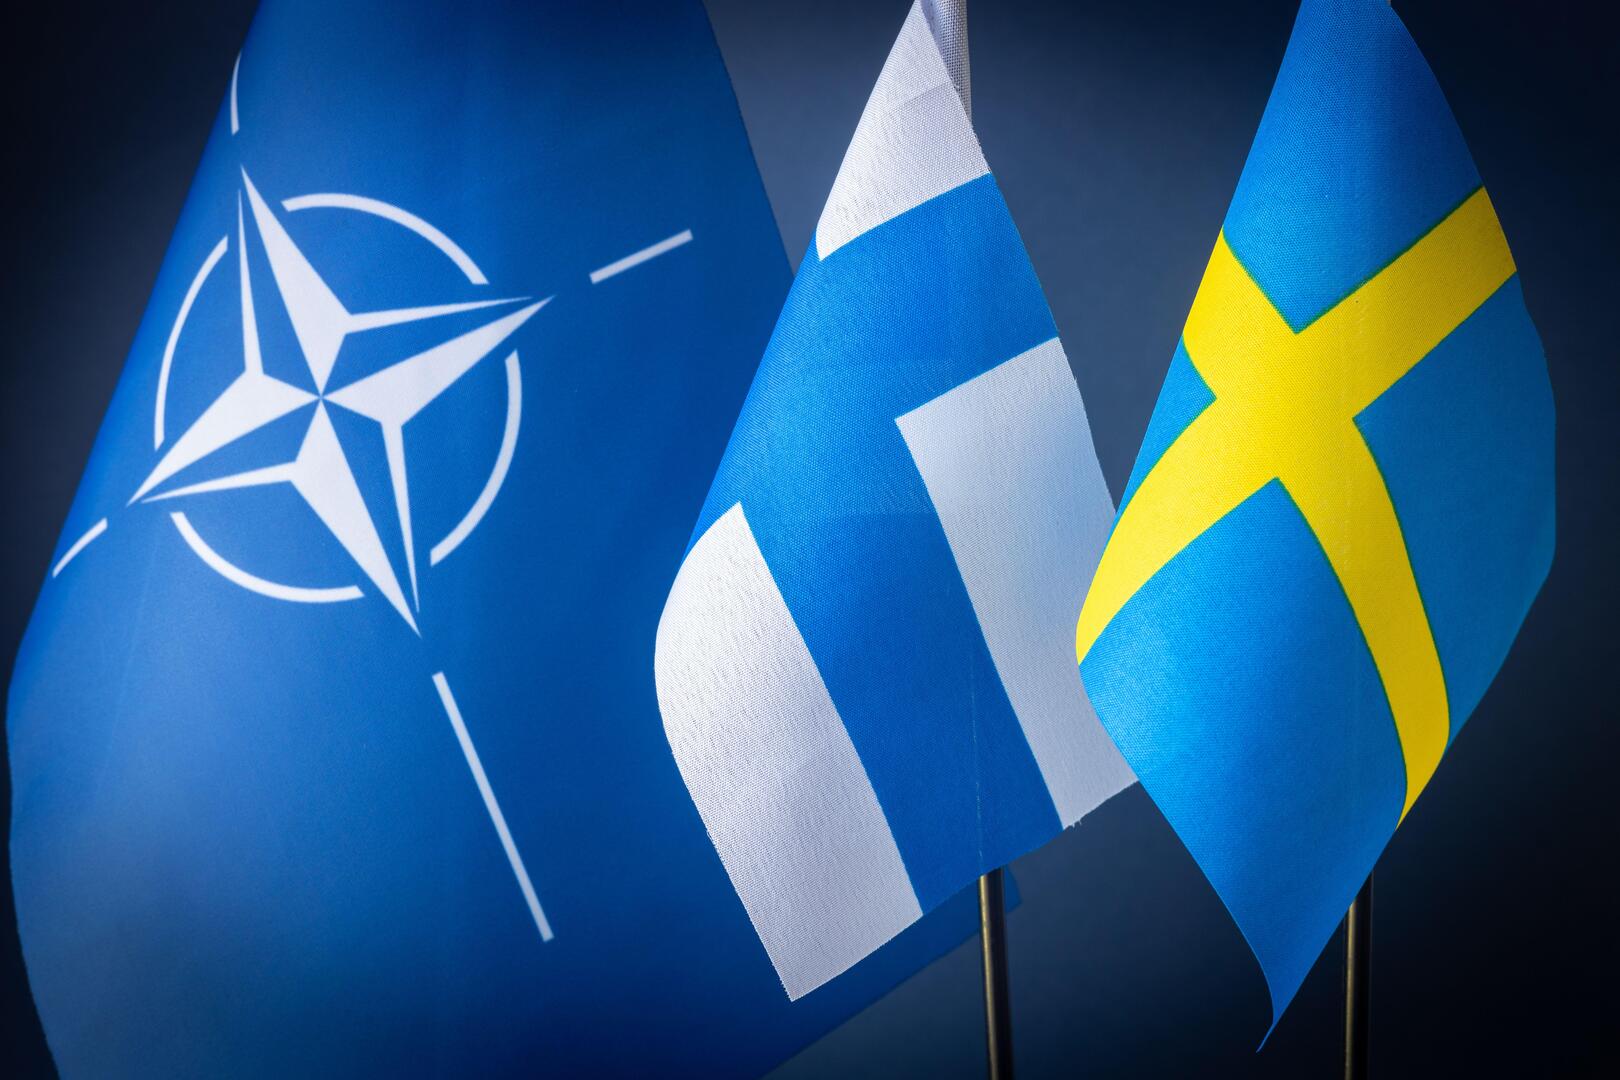 إتمام محادثات عضوية فنلندا والسويد في الناتو وتوقيع بروتوكول الانضمام غدا